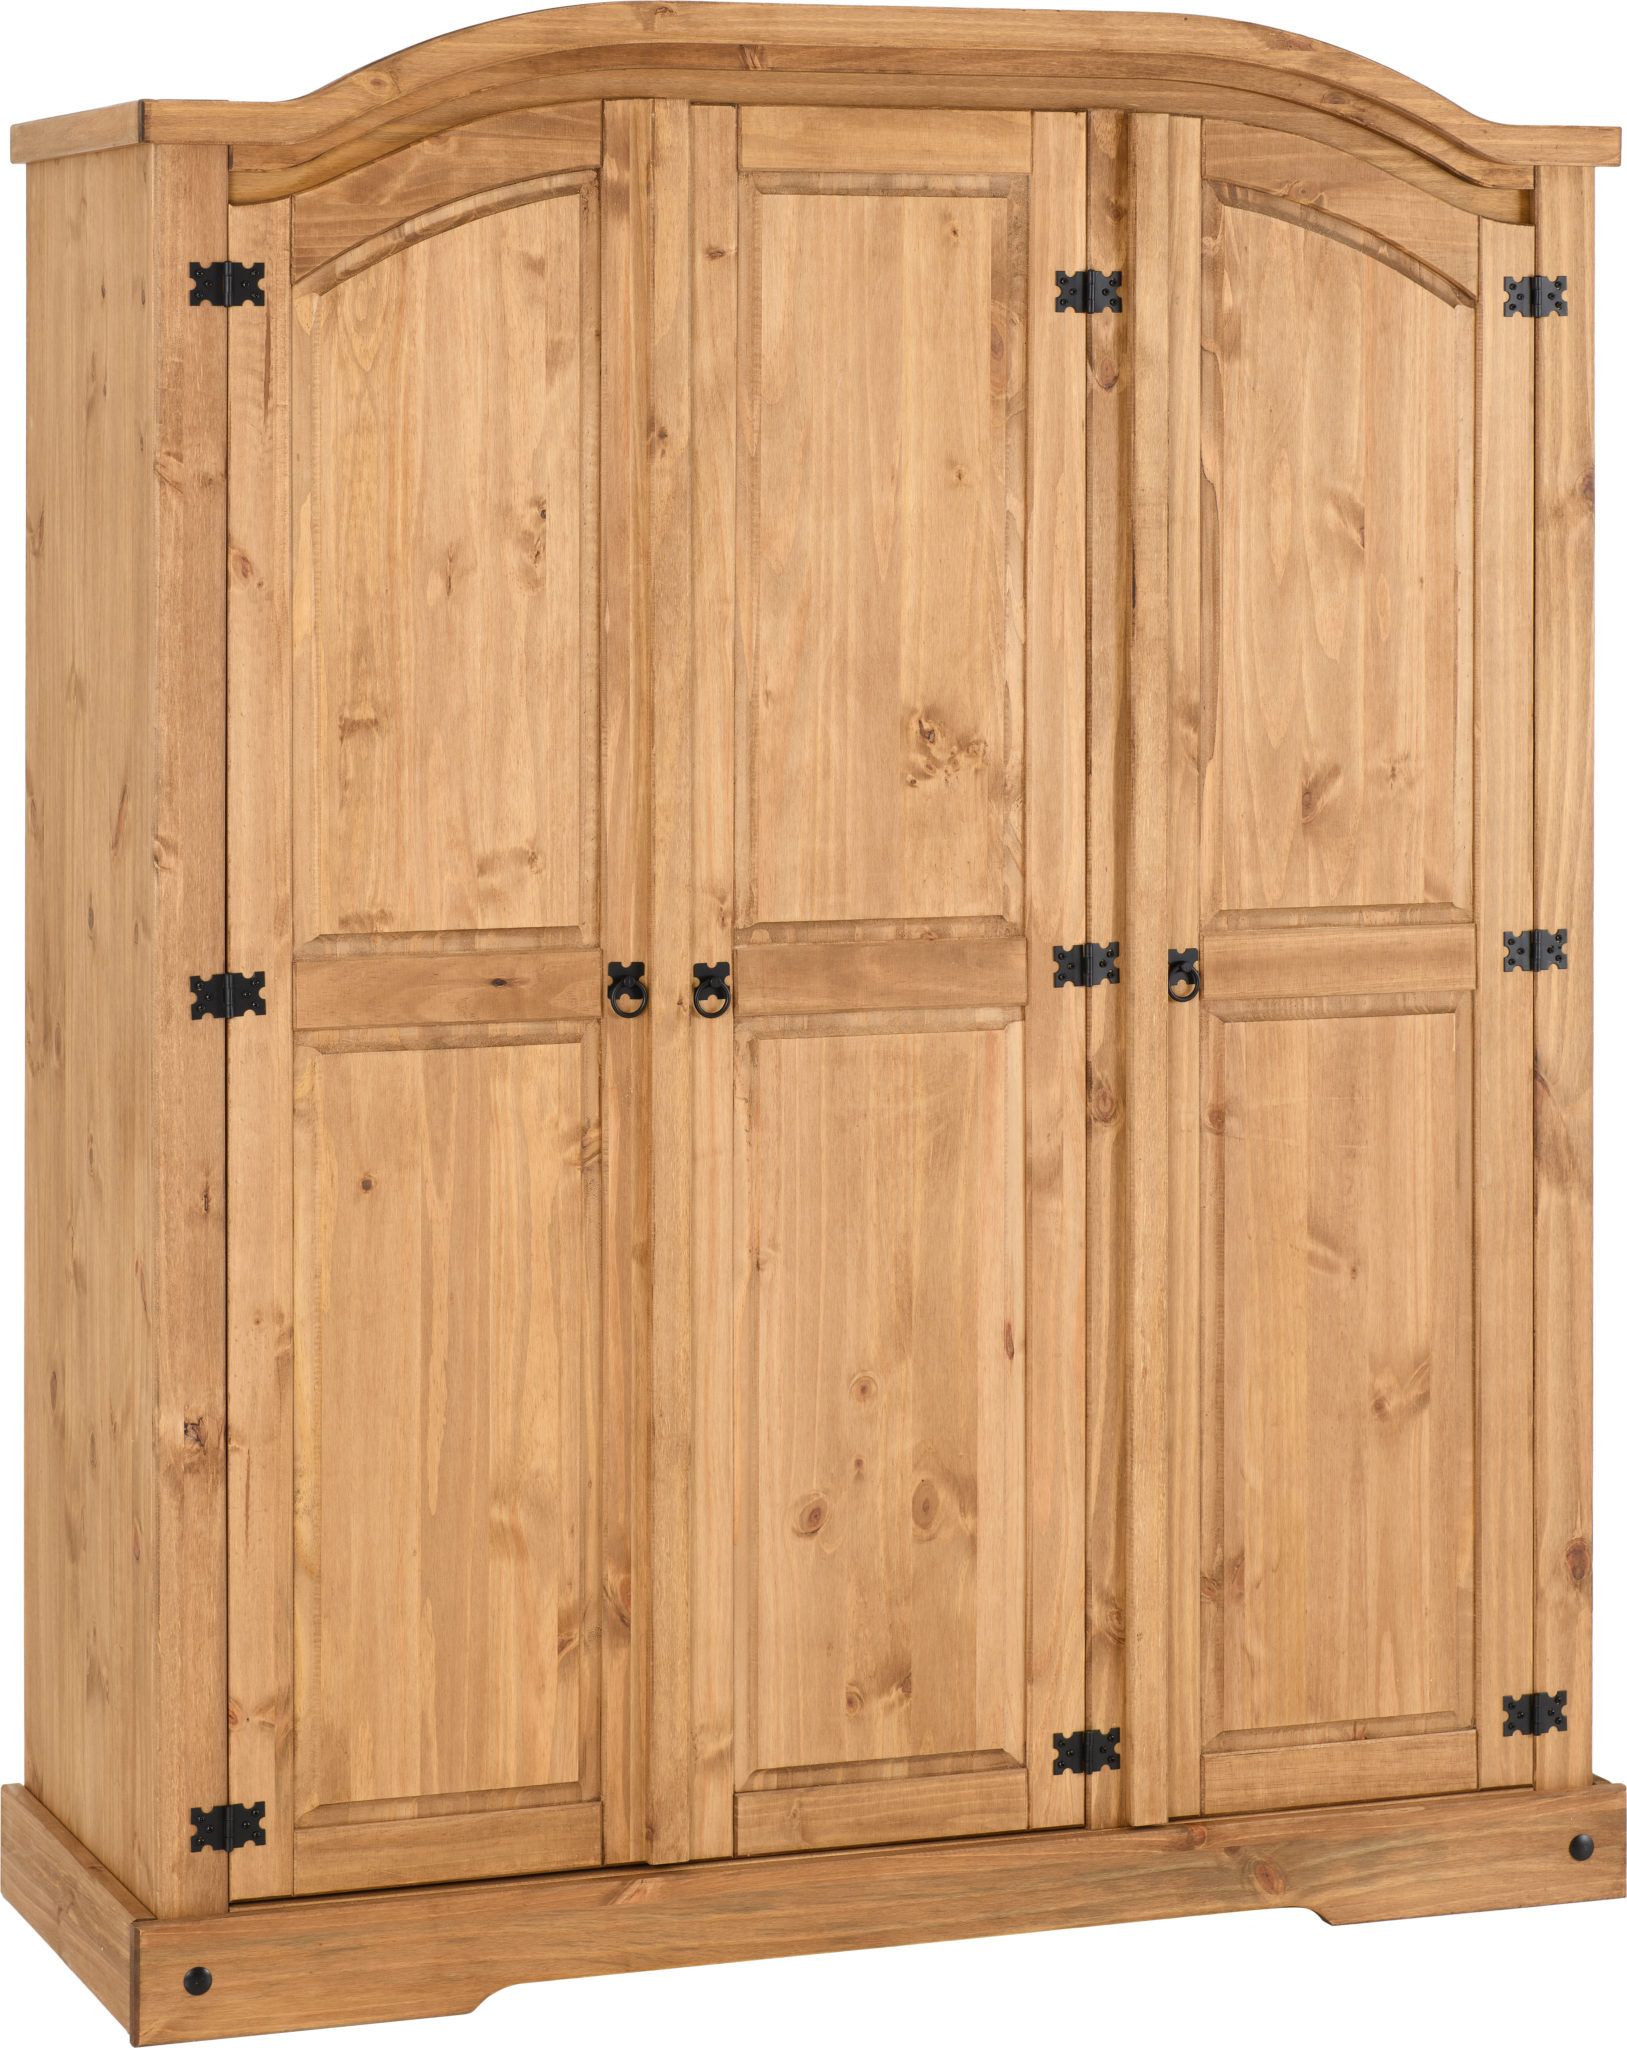 Corona 3 Door Wardrobe – Distressed Waxed Pine Throughout Corona 3 Door Wardrobes (View 2 of 15)